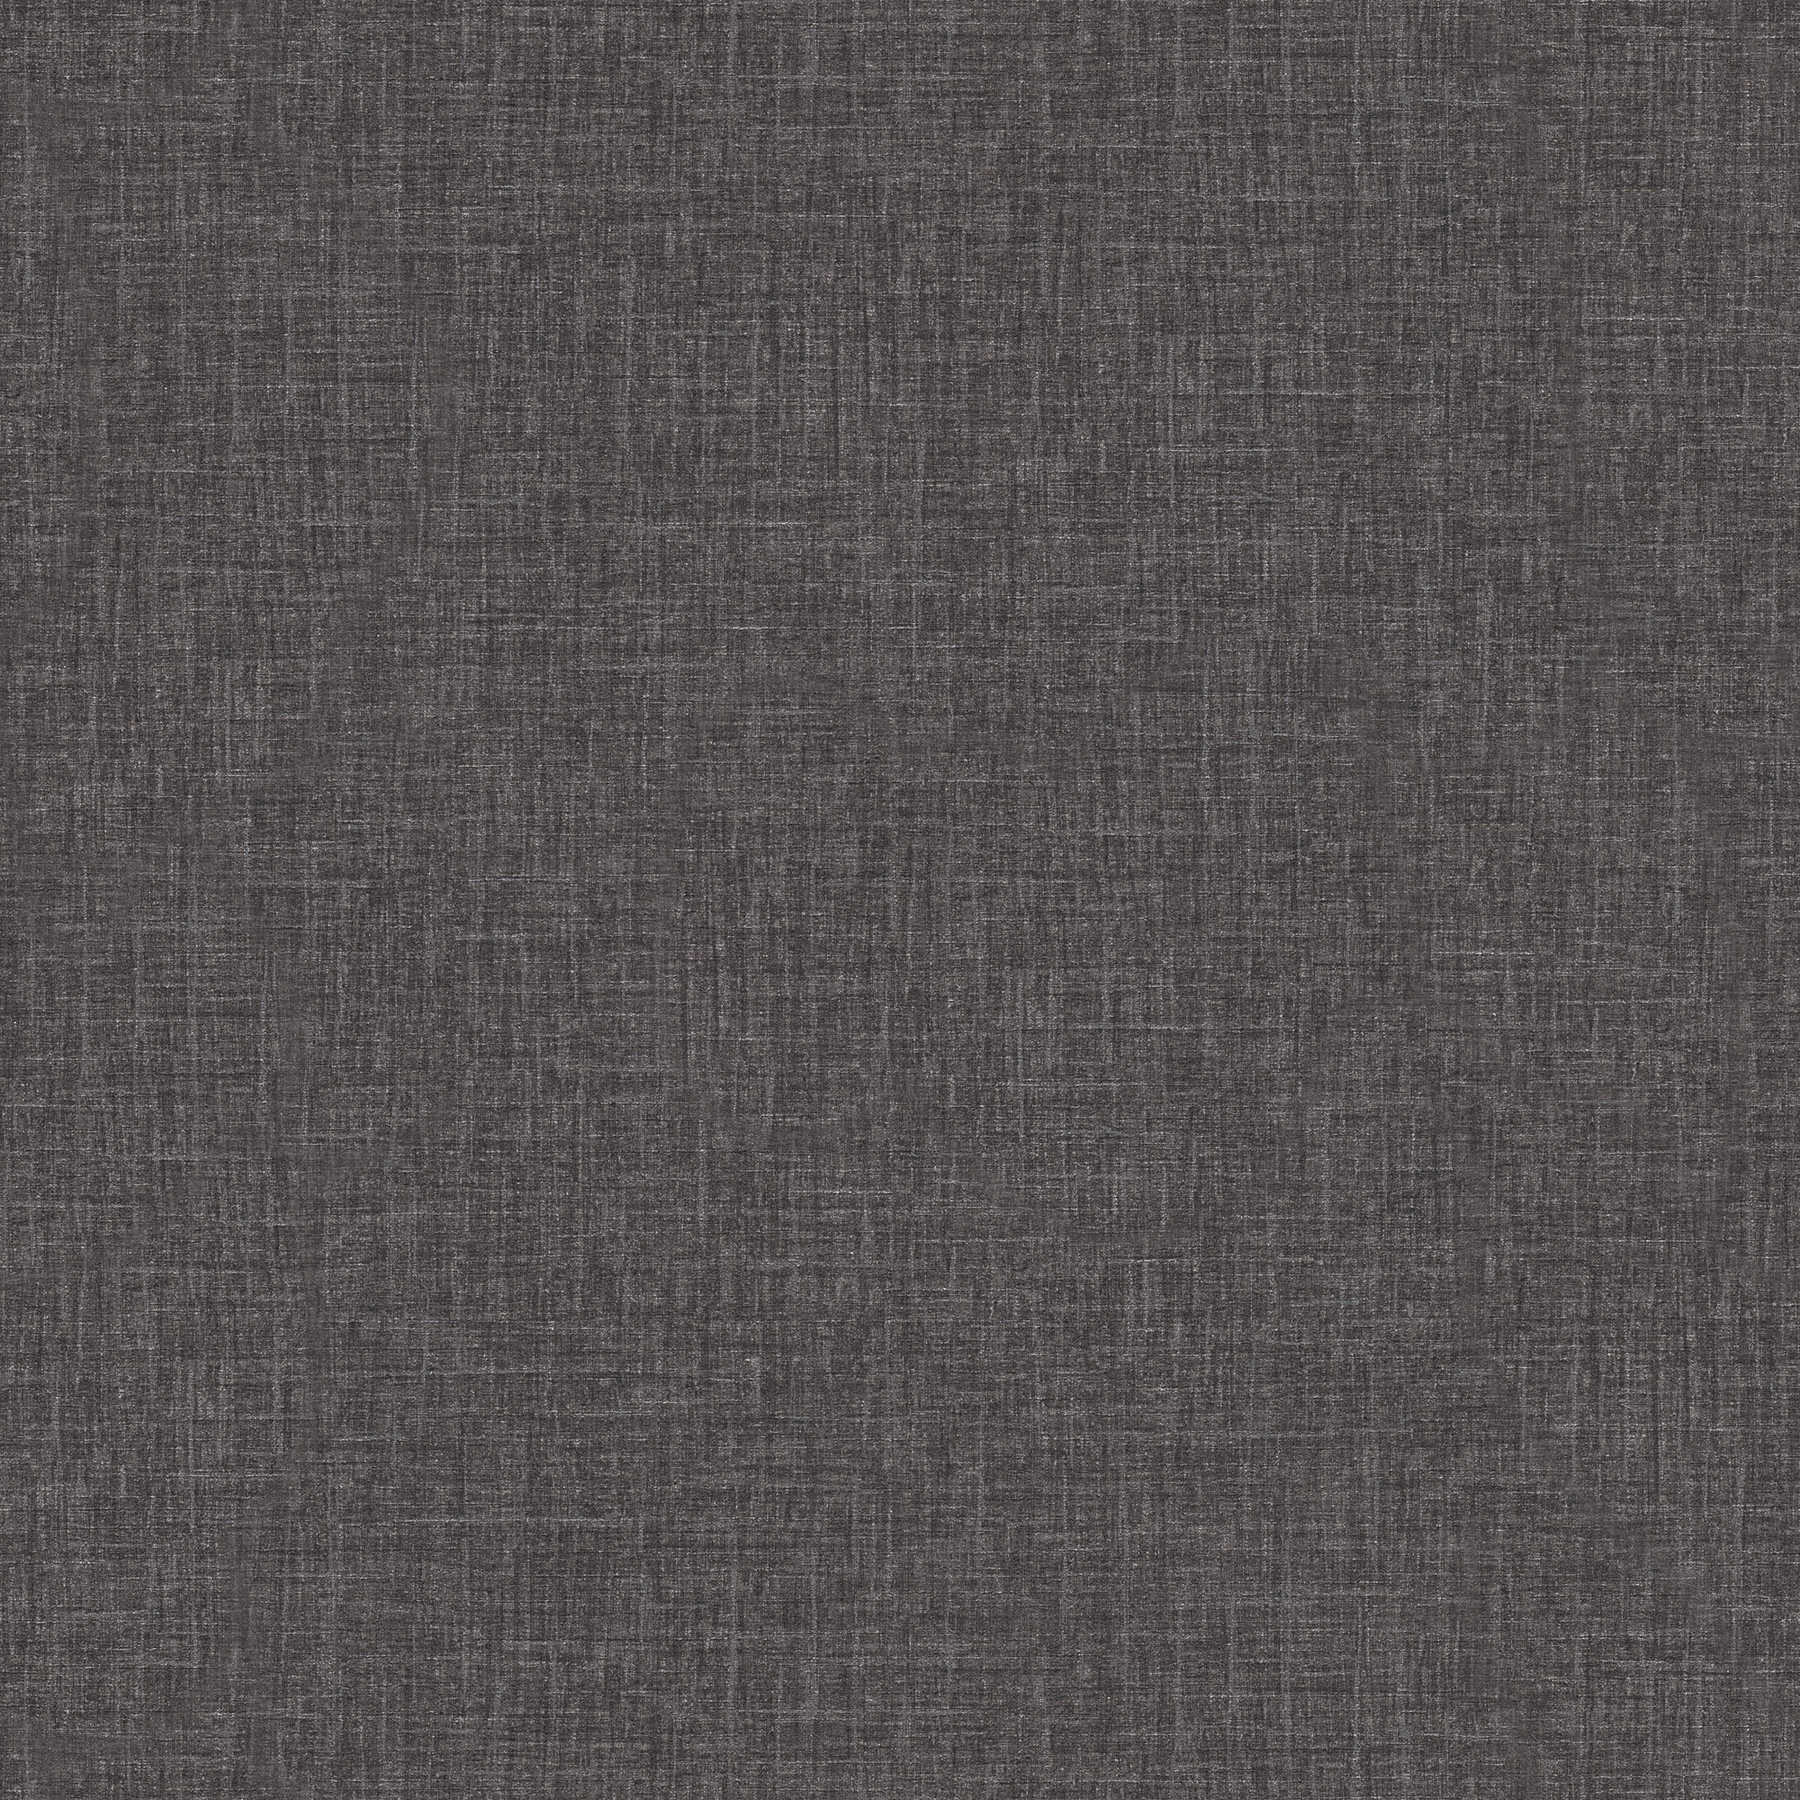 VERSACE eenheidsbehang in linnenlook met glans - zwart, grijs
